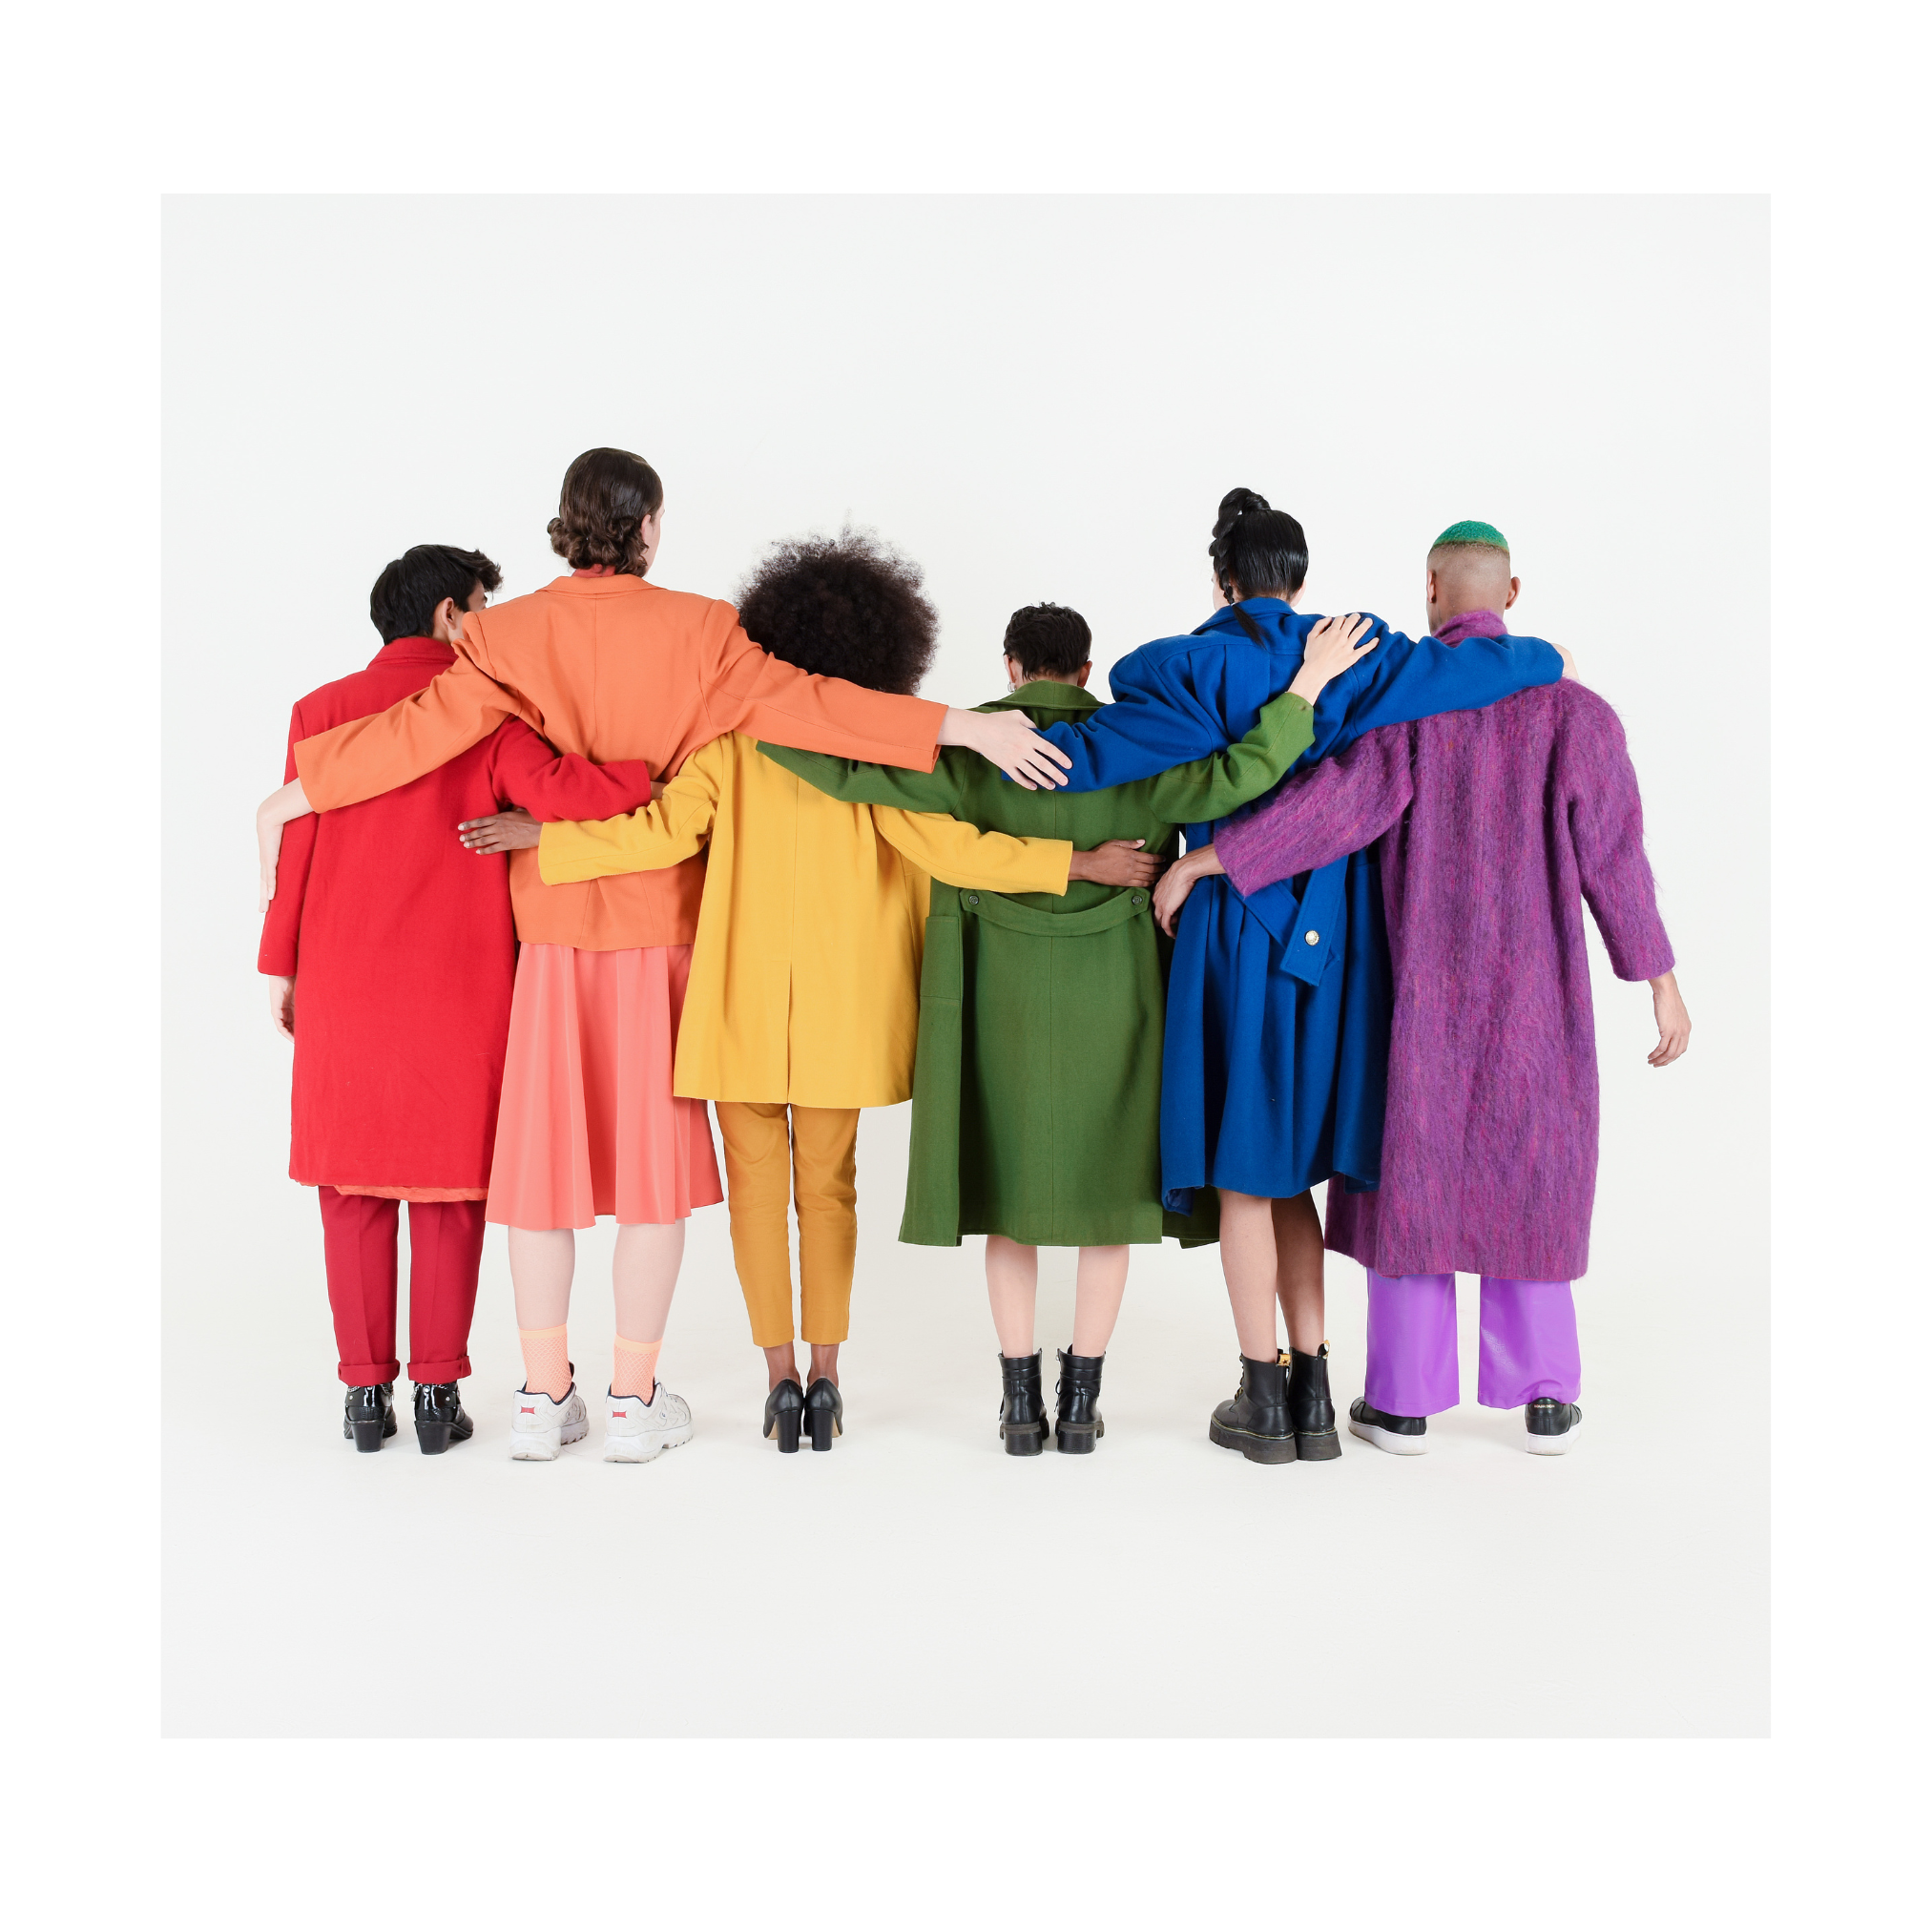 Auf dem Bild sieht man eine Gruppe von Menschen, die in regenbogenfarben angezogen ist.